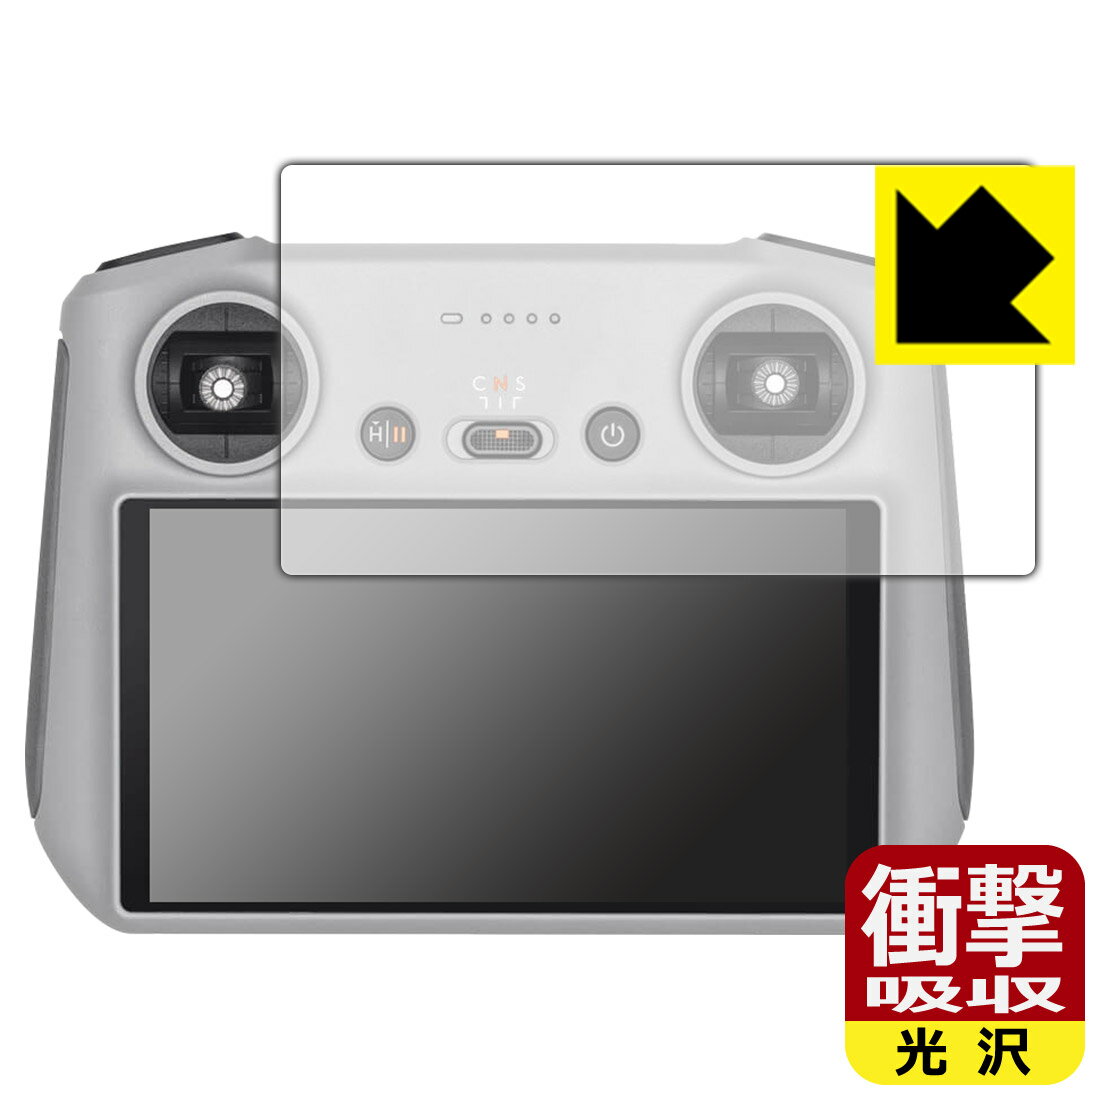 衝撃吸収【光沢】保護フィルム DJI RC 送信機用 (RM330) 日本製 自社製造直販